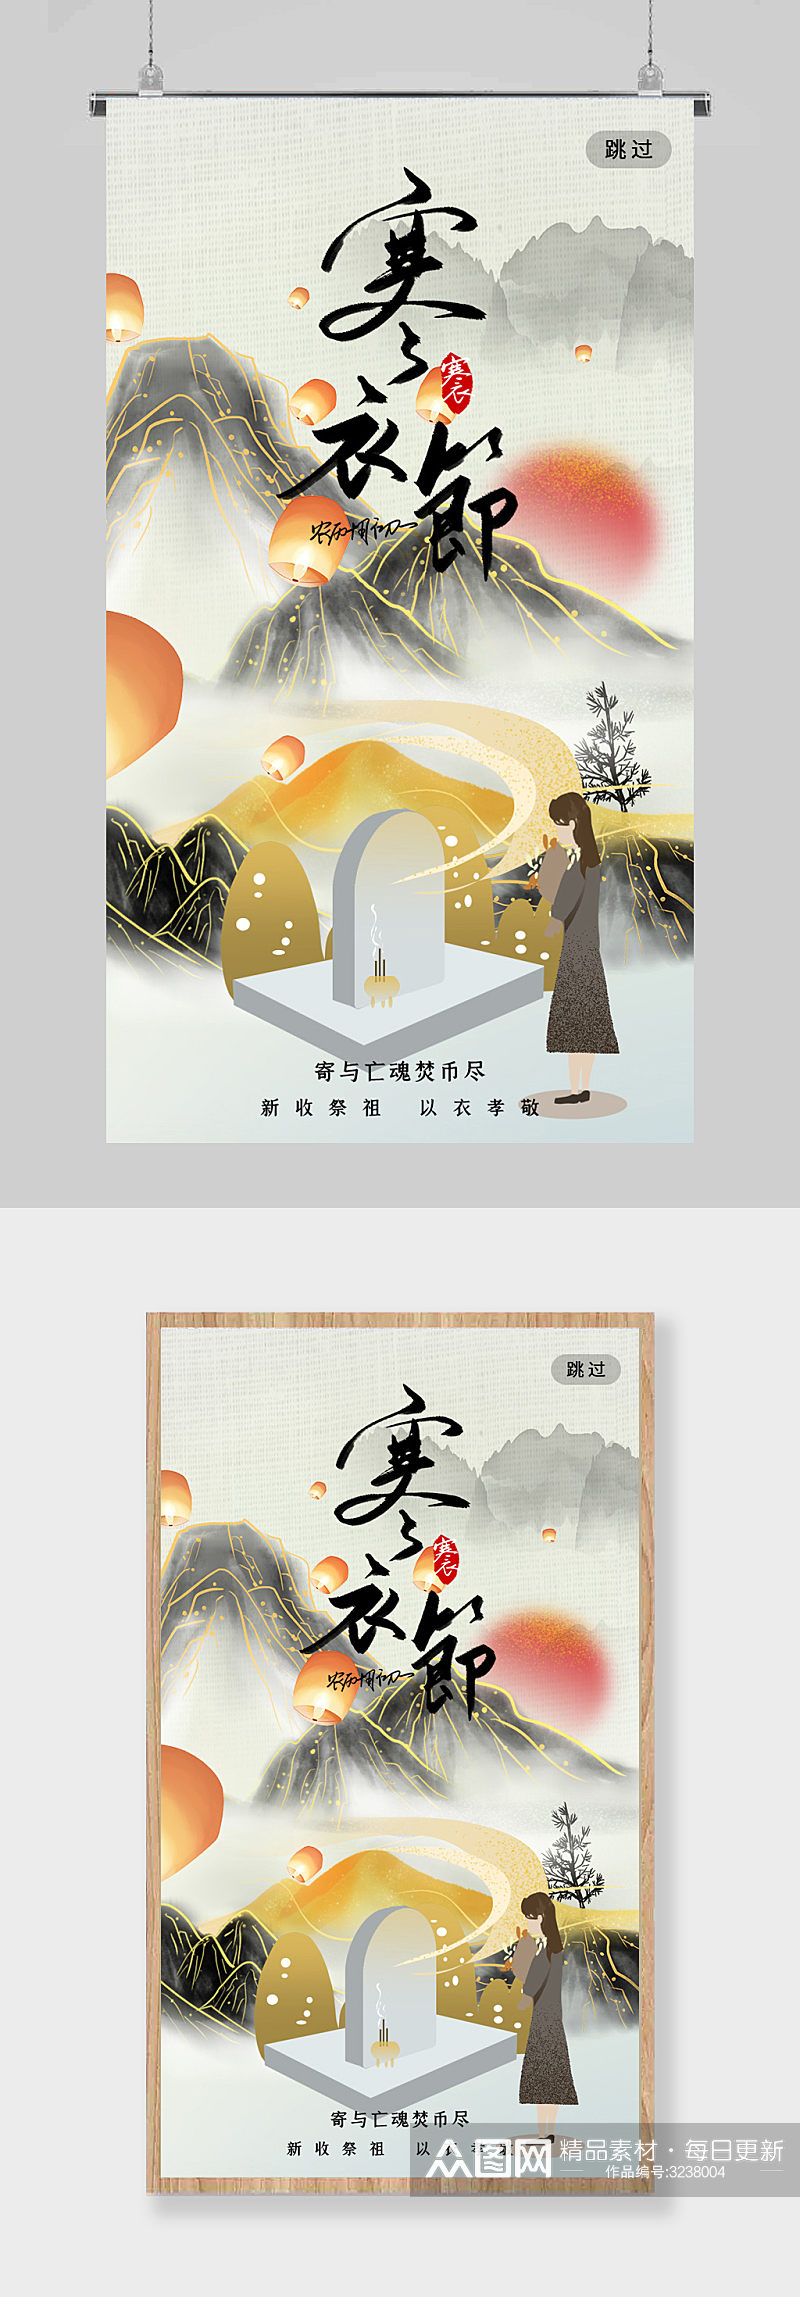 中国风中国传统节日寒衣节海报素材